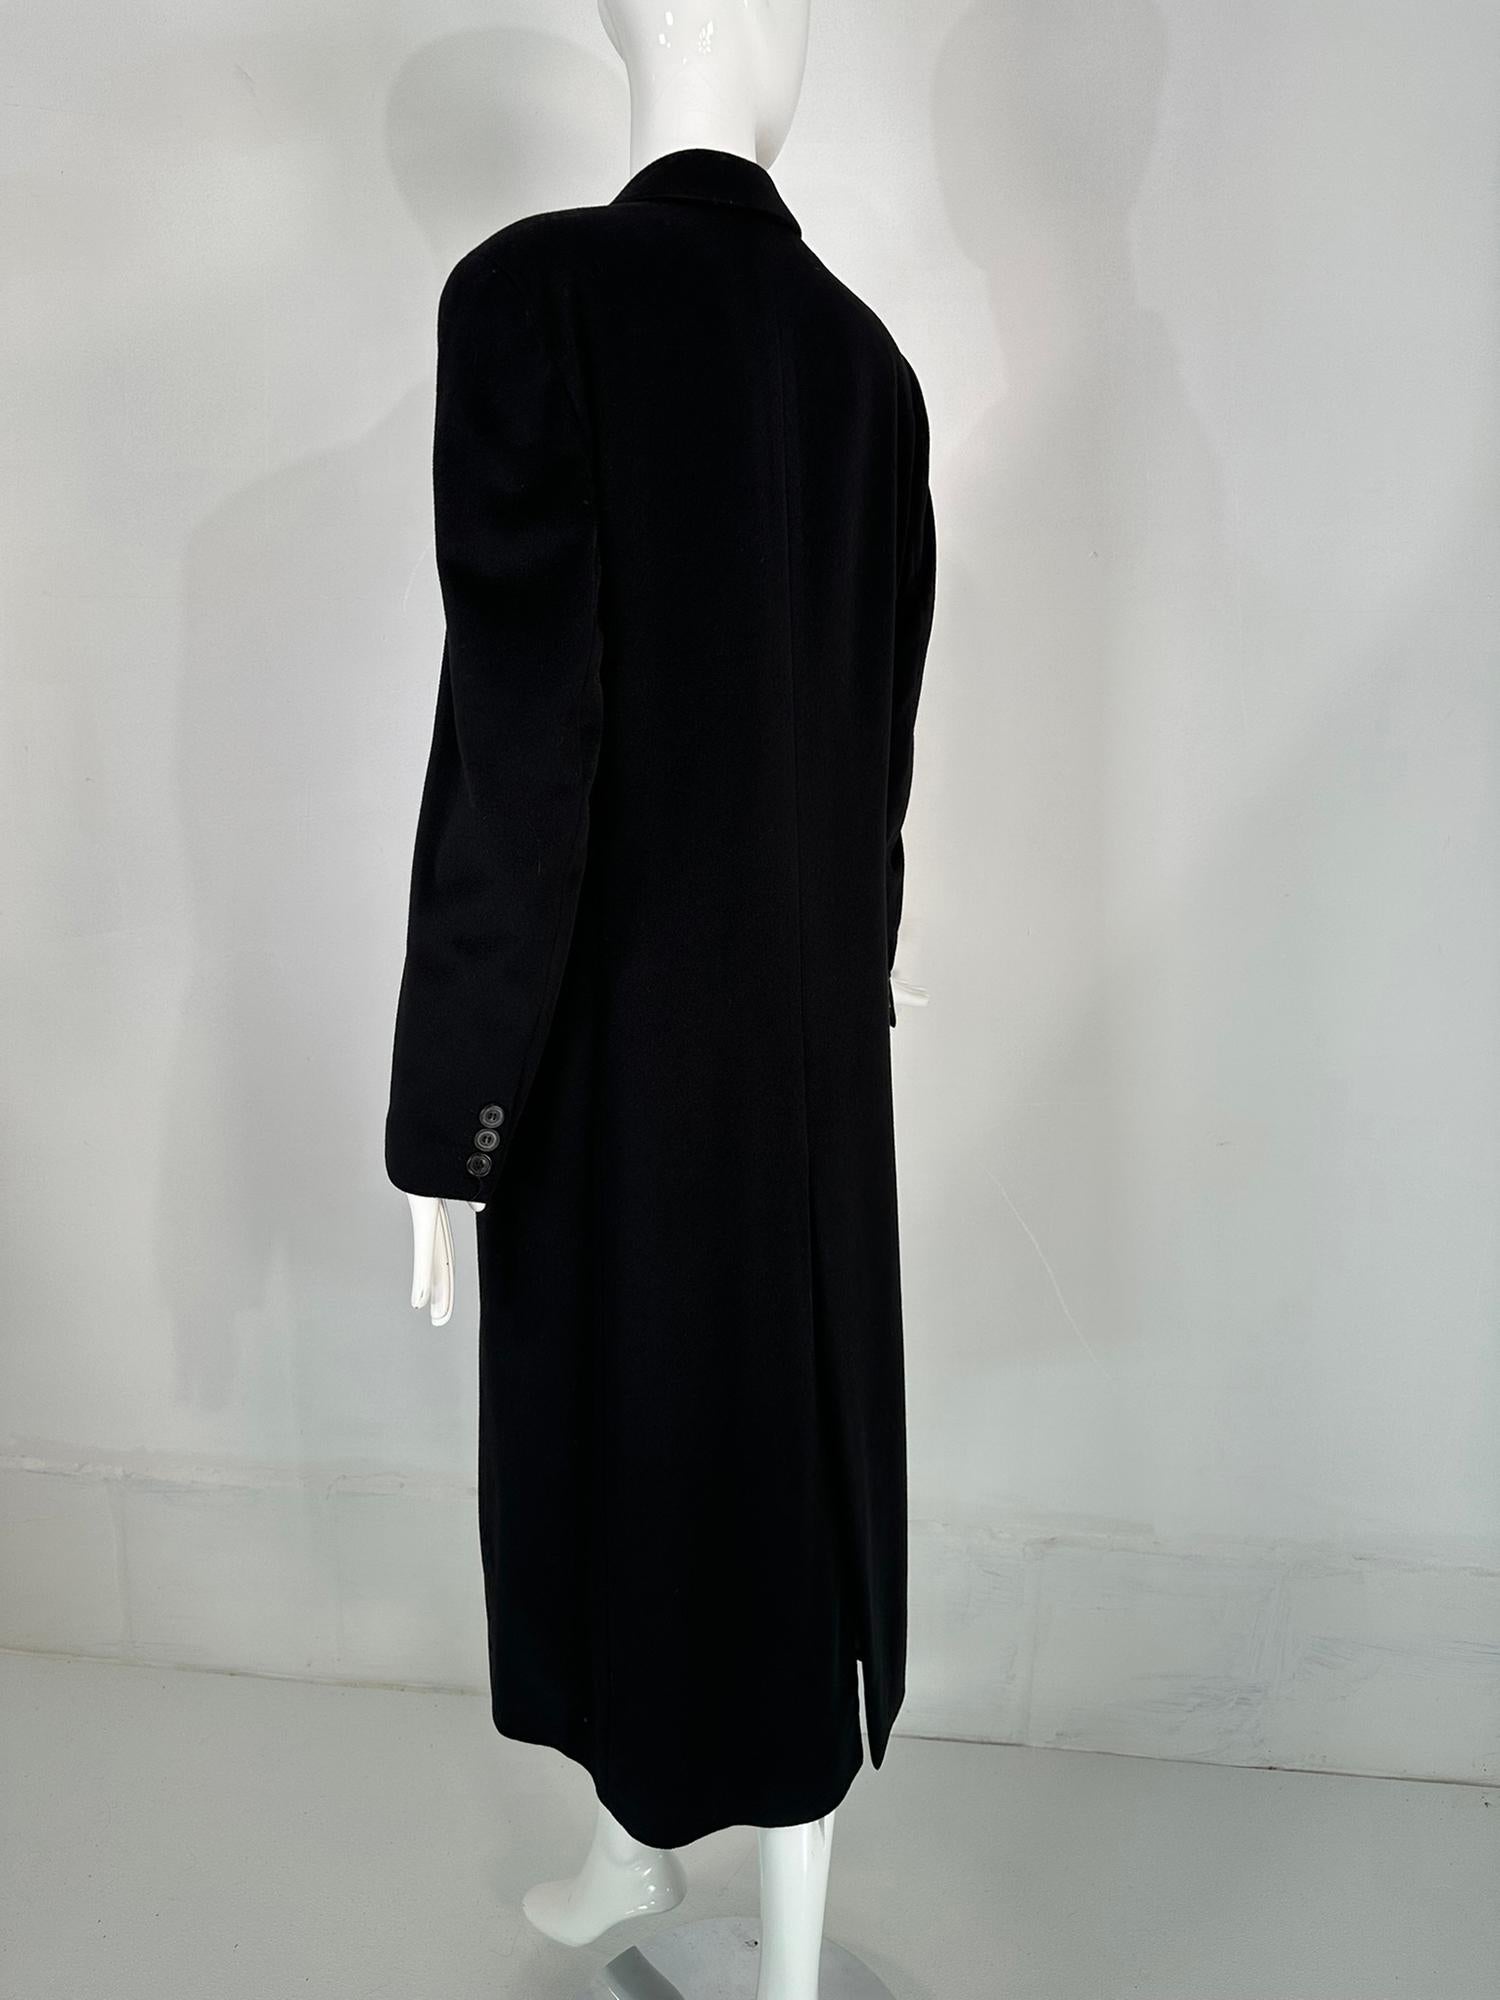 Giorgio Armani Classico Black Label Black Cashmere Double Breasted Winter Coat 5